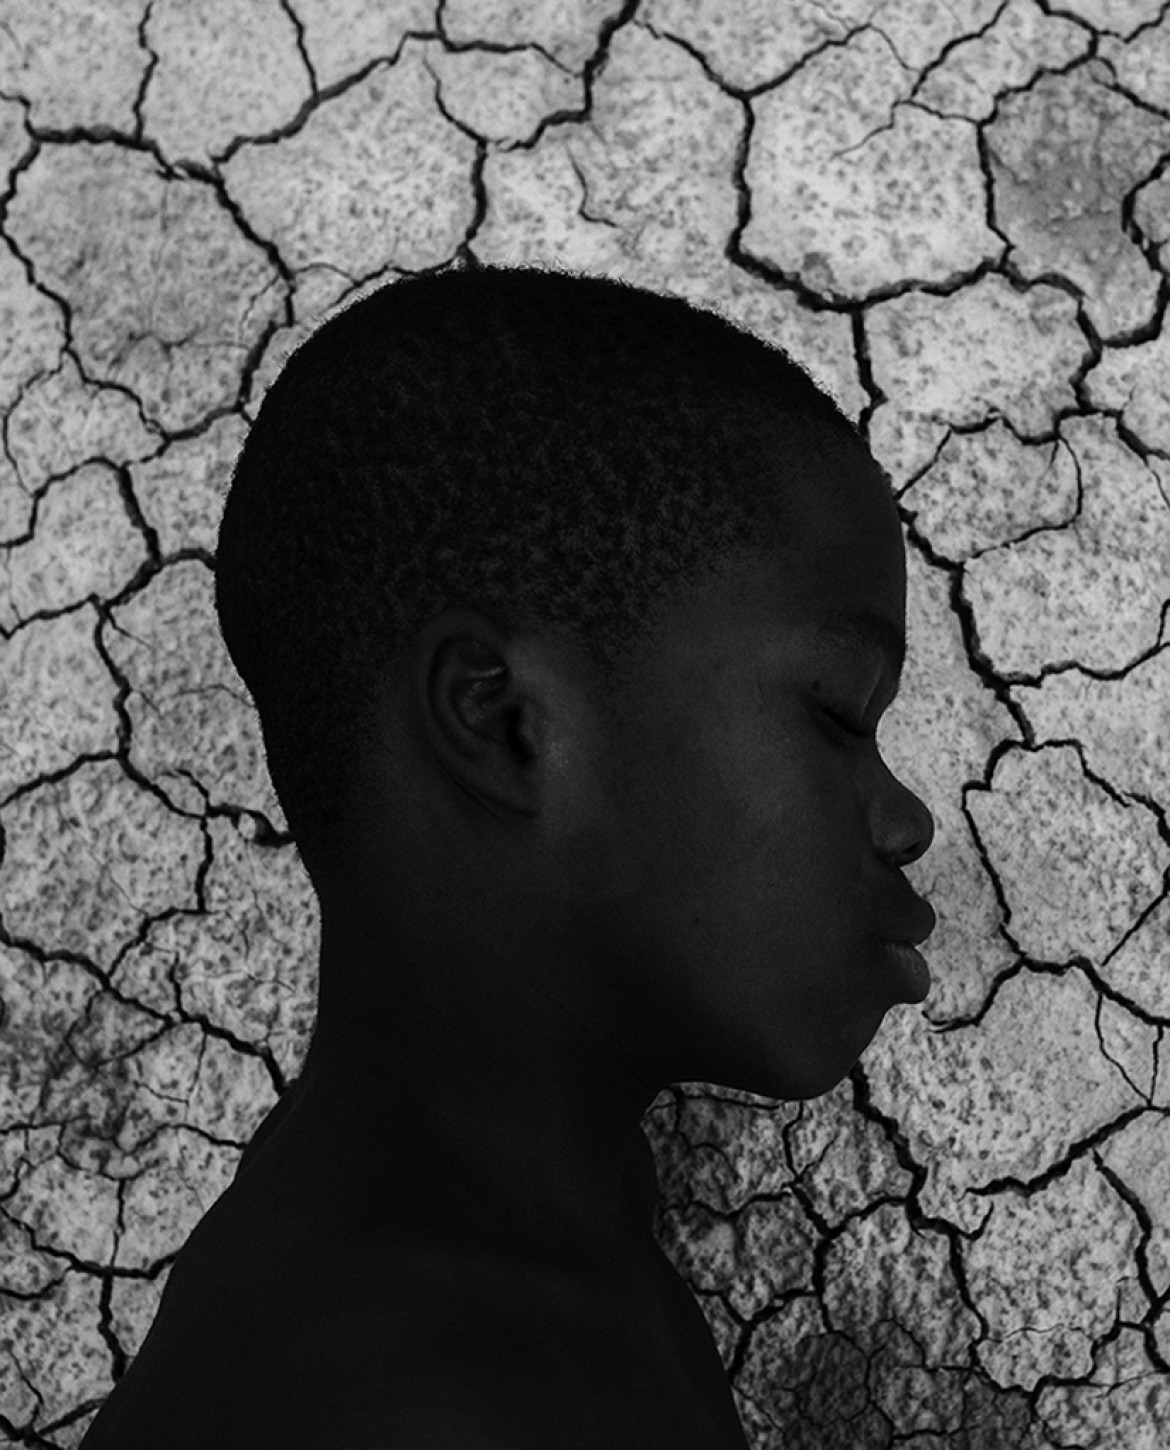 fot. Antoine Jonquiere, "The Boy & The Earth, Ghana 2019", 1. miejsce w kategorii Portrait